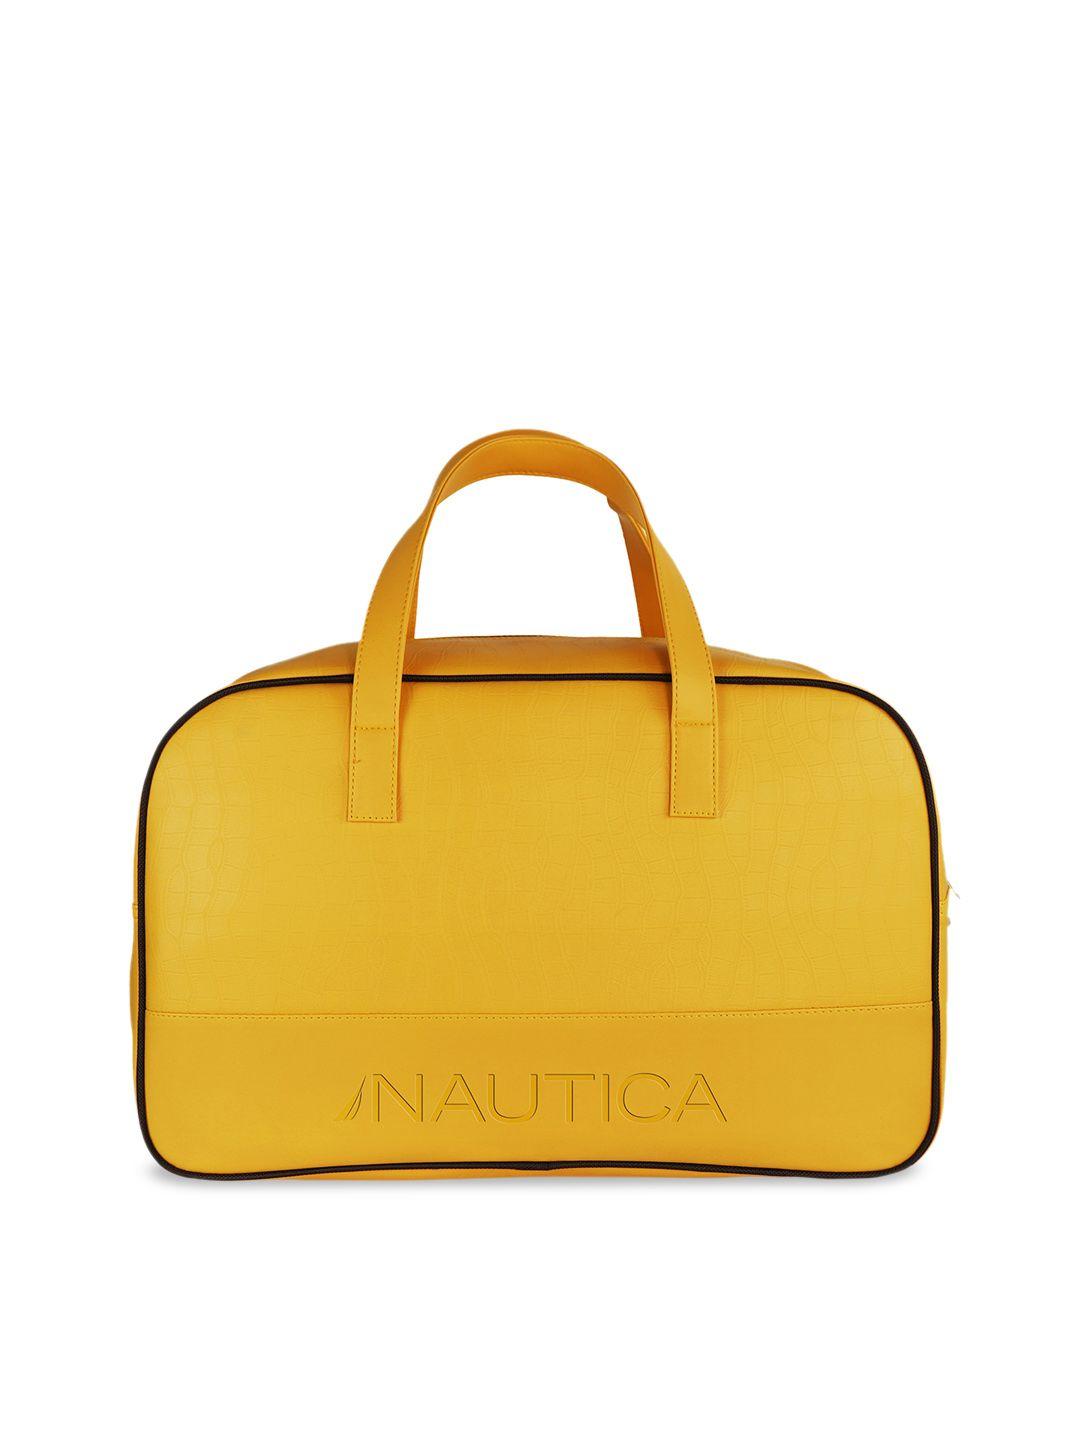 nautica  medium leather duffel bag